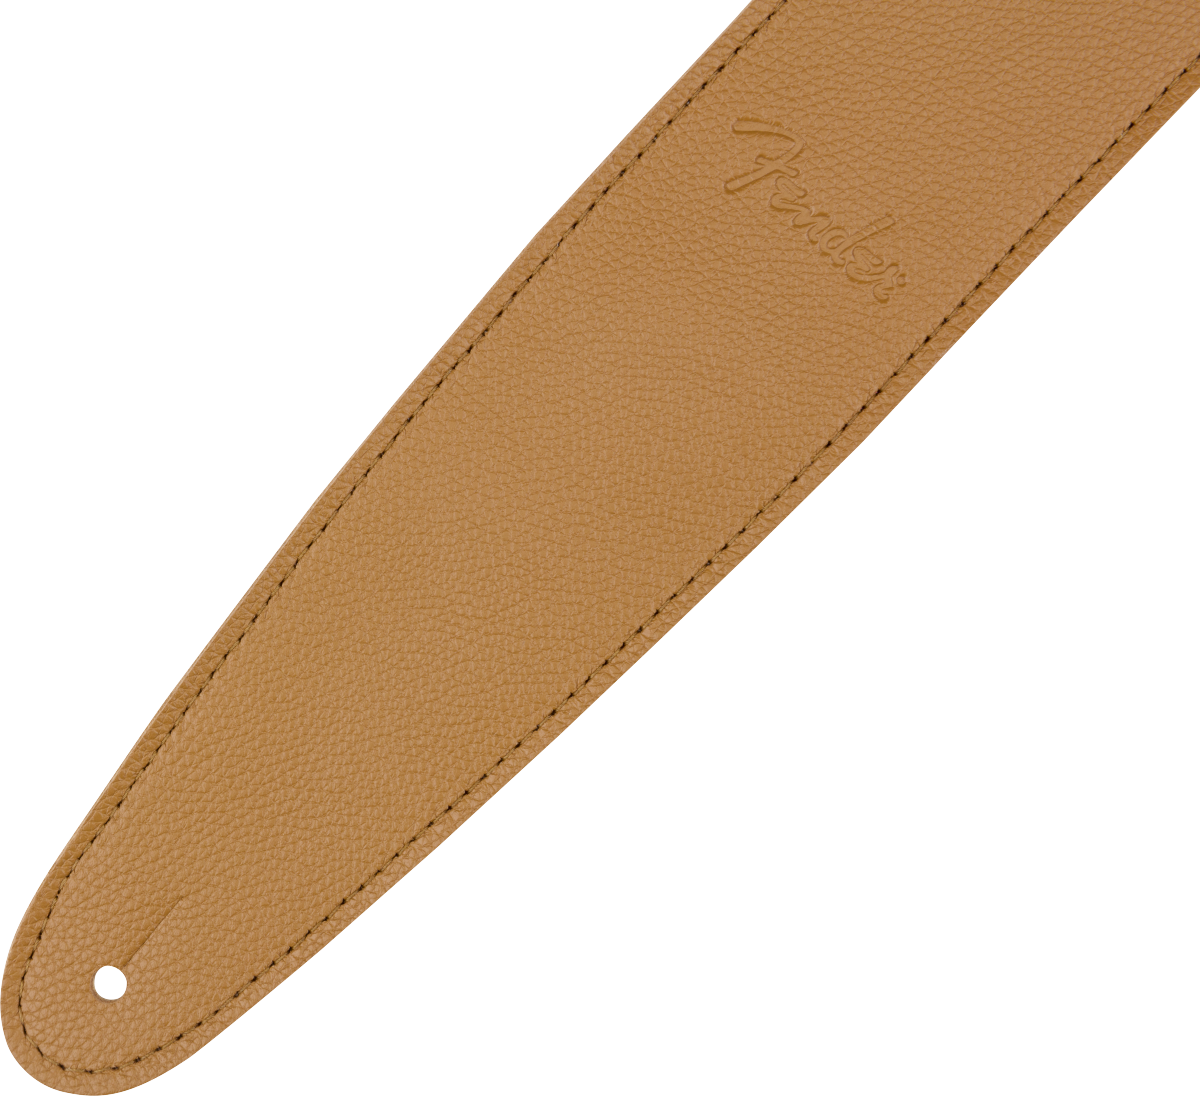 Fender Limited Leather Strap - Laurel Tan